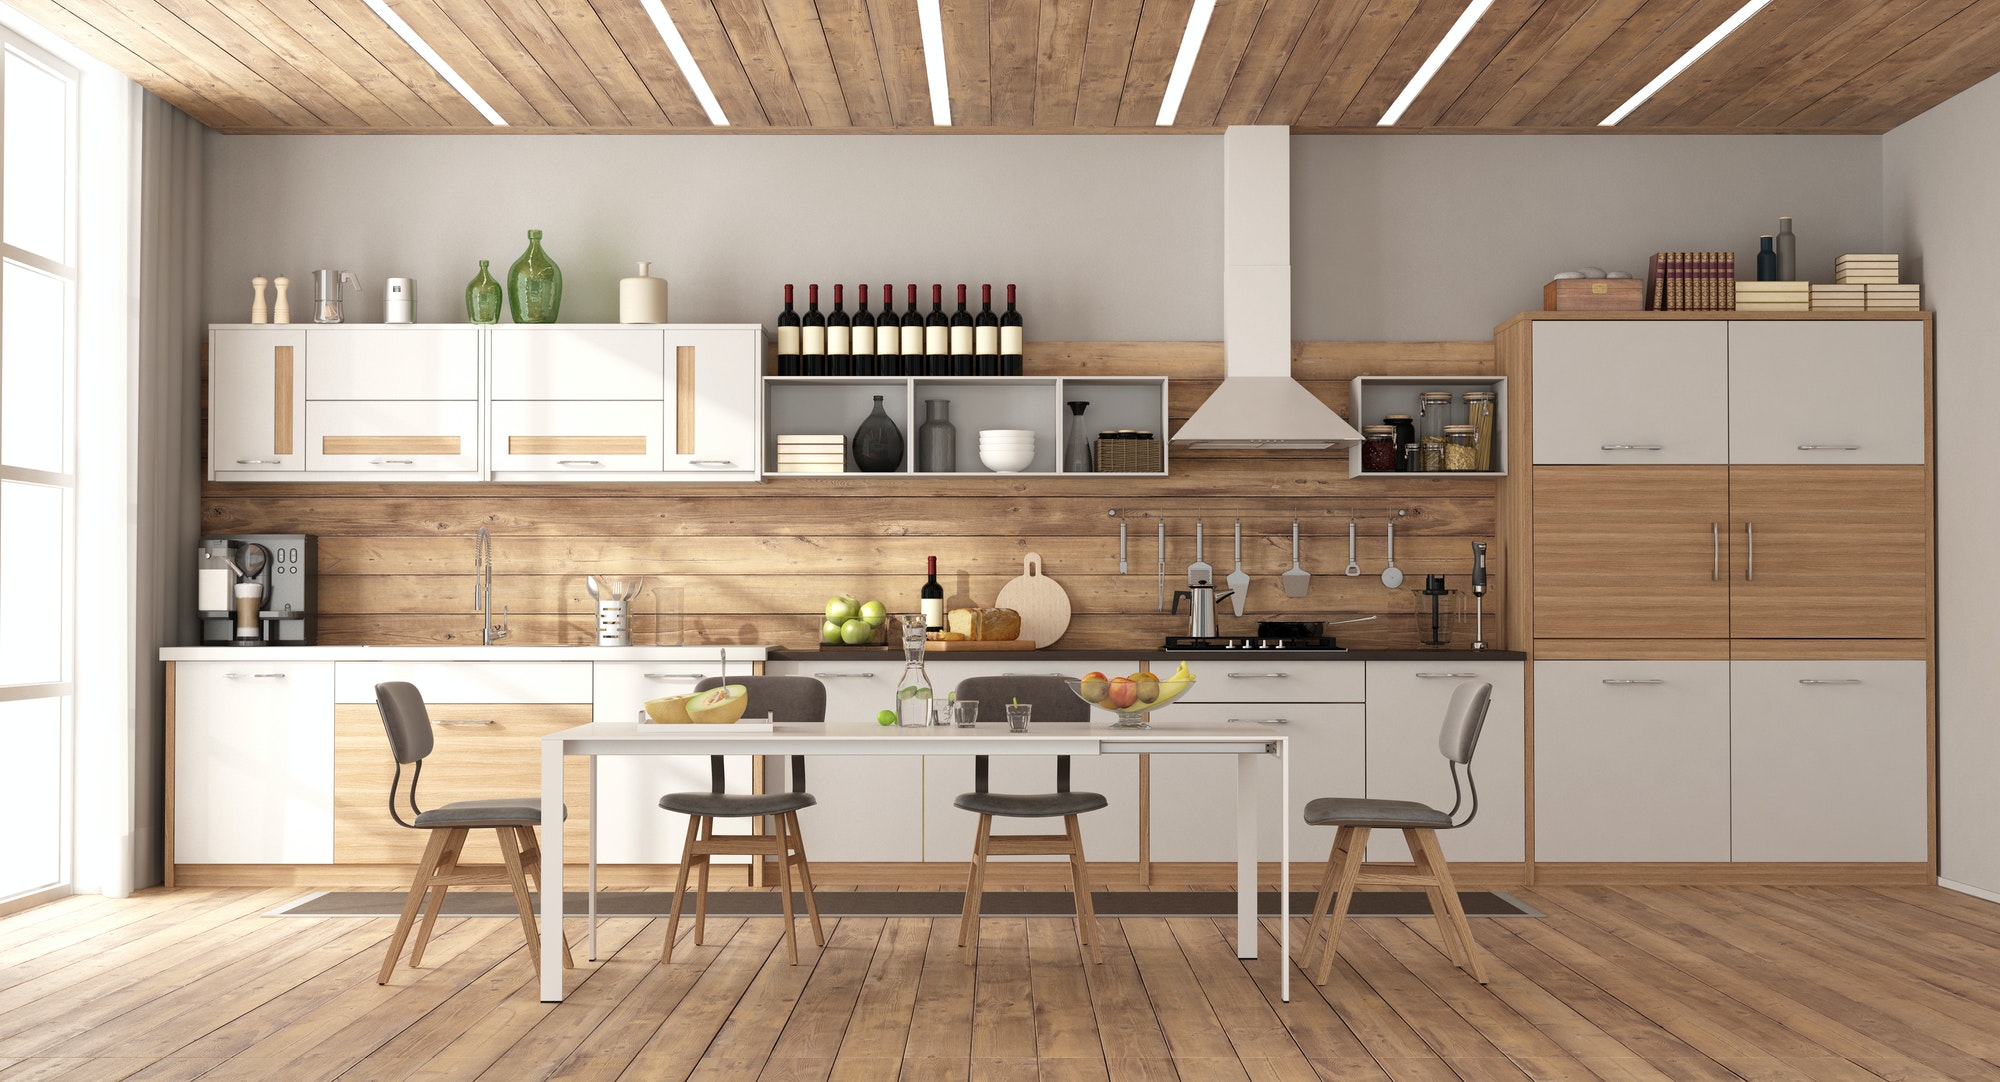 Modern white and wooden kitchen